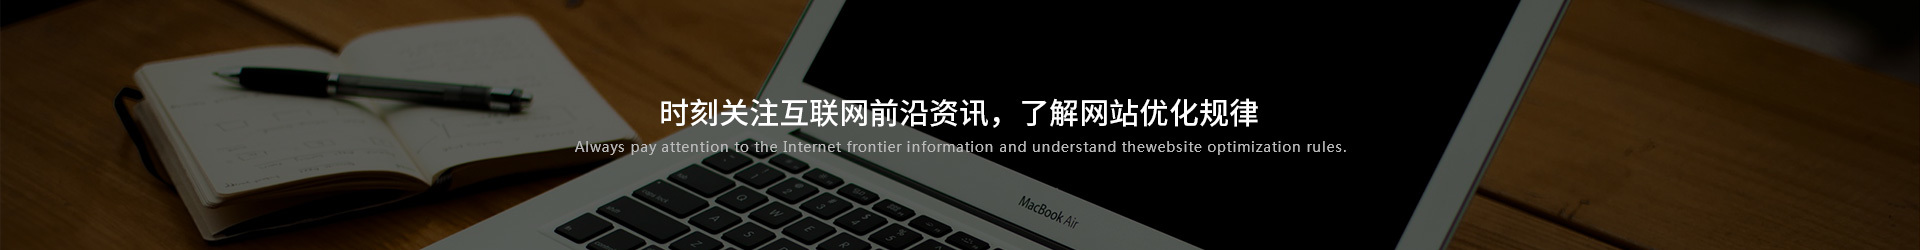 郑州动能网络科技有限公司网站推广